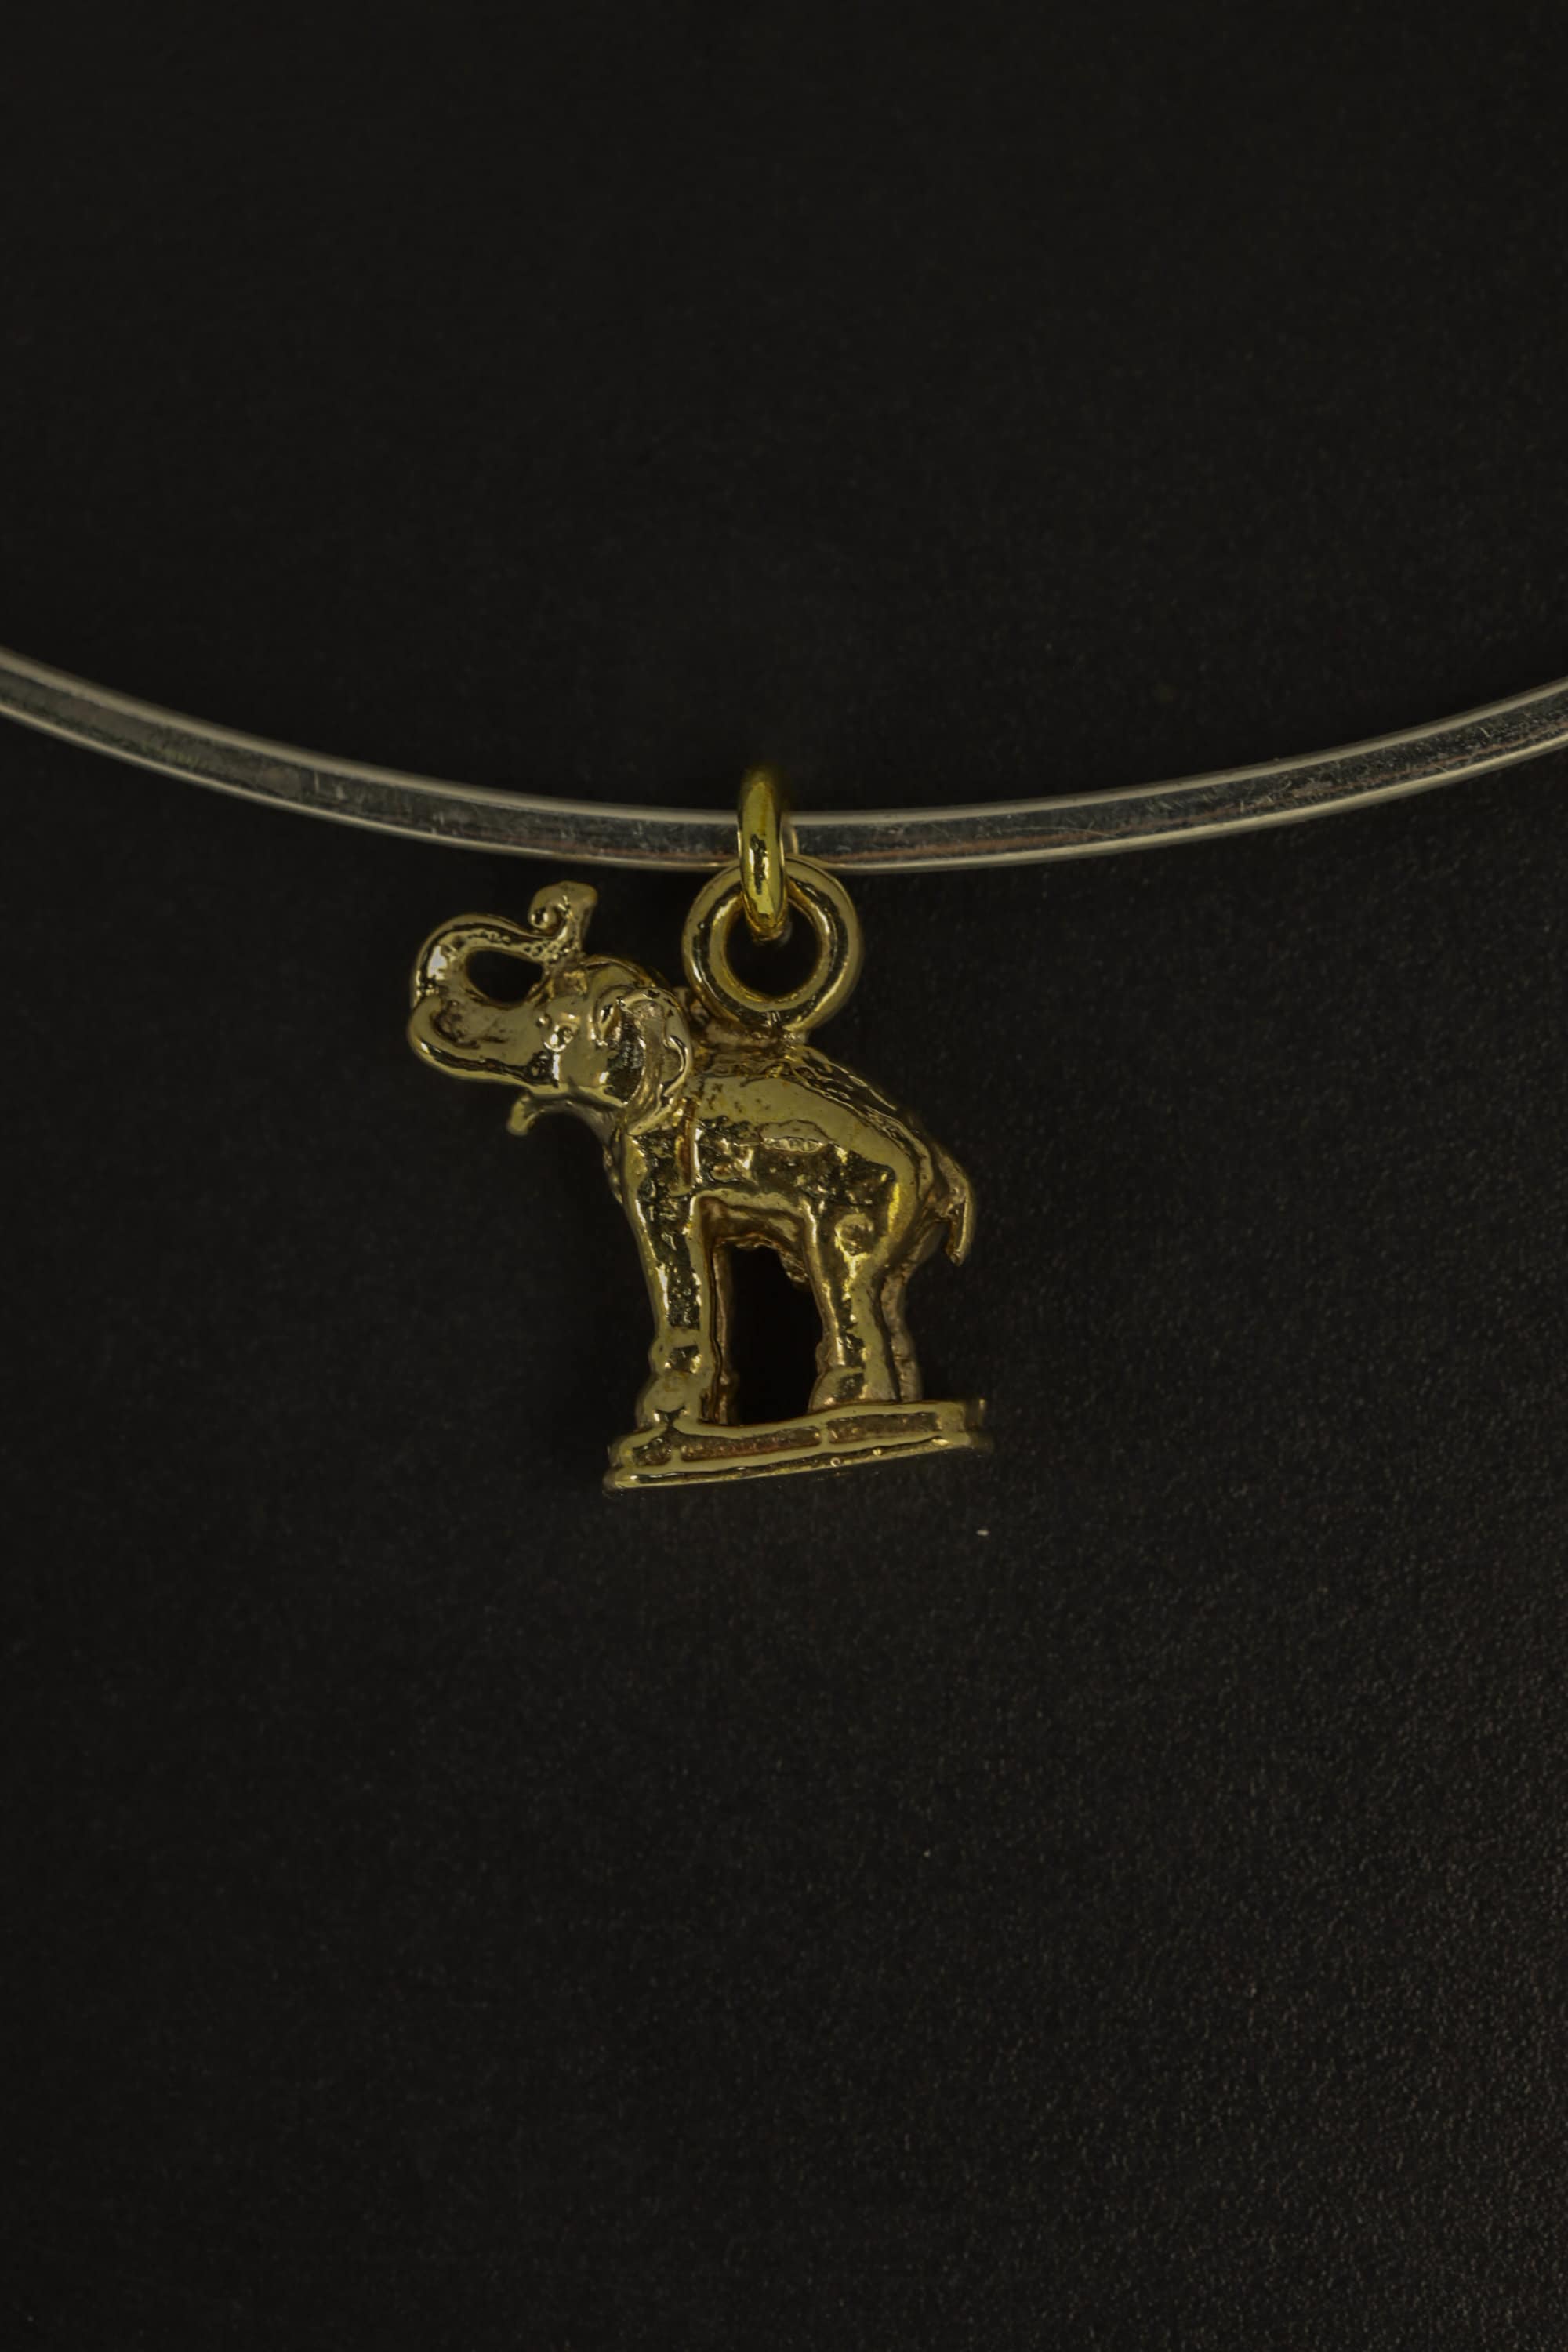 Aurelian Tusker Amulet - Gold Plated Brass Cast - Pendant Necklace